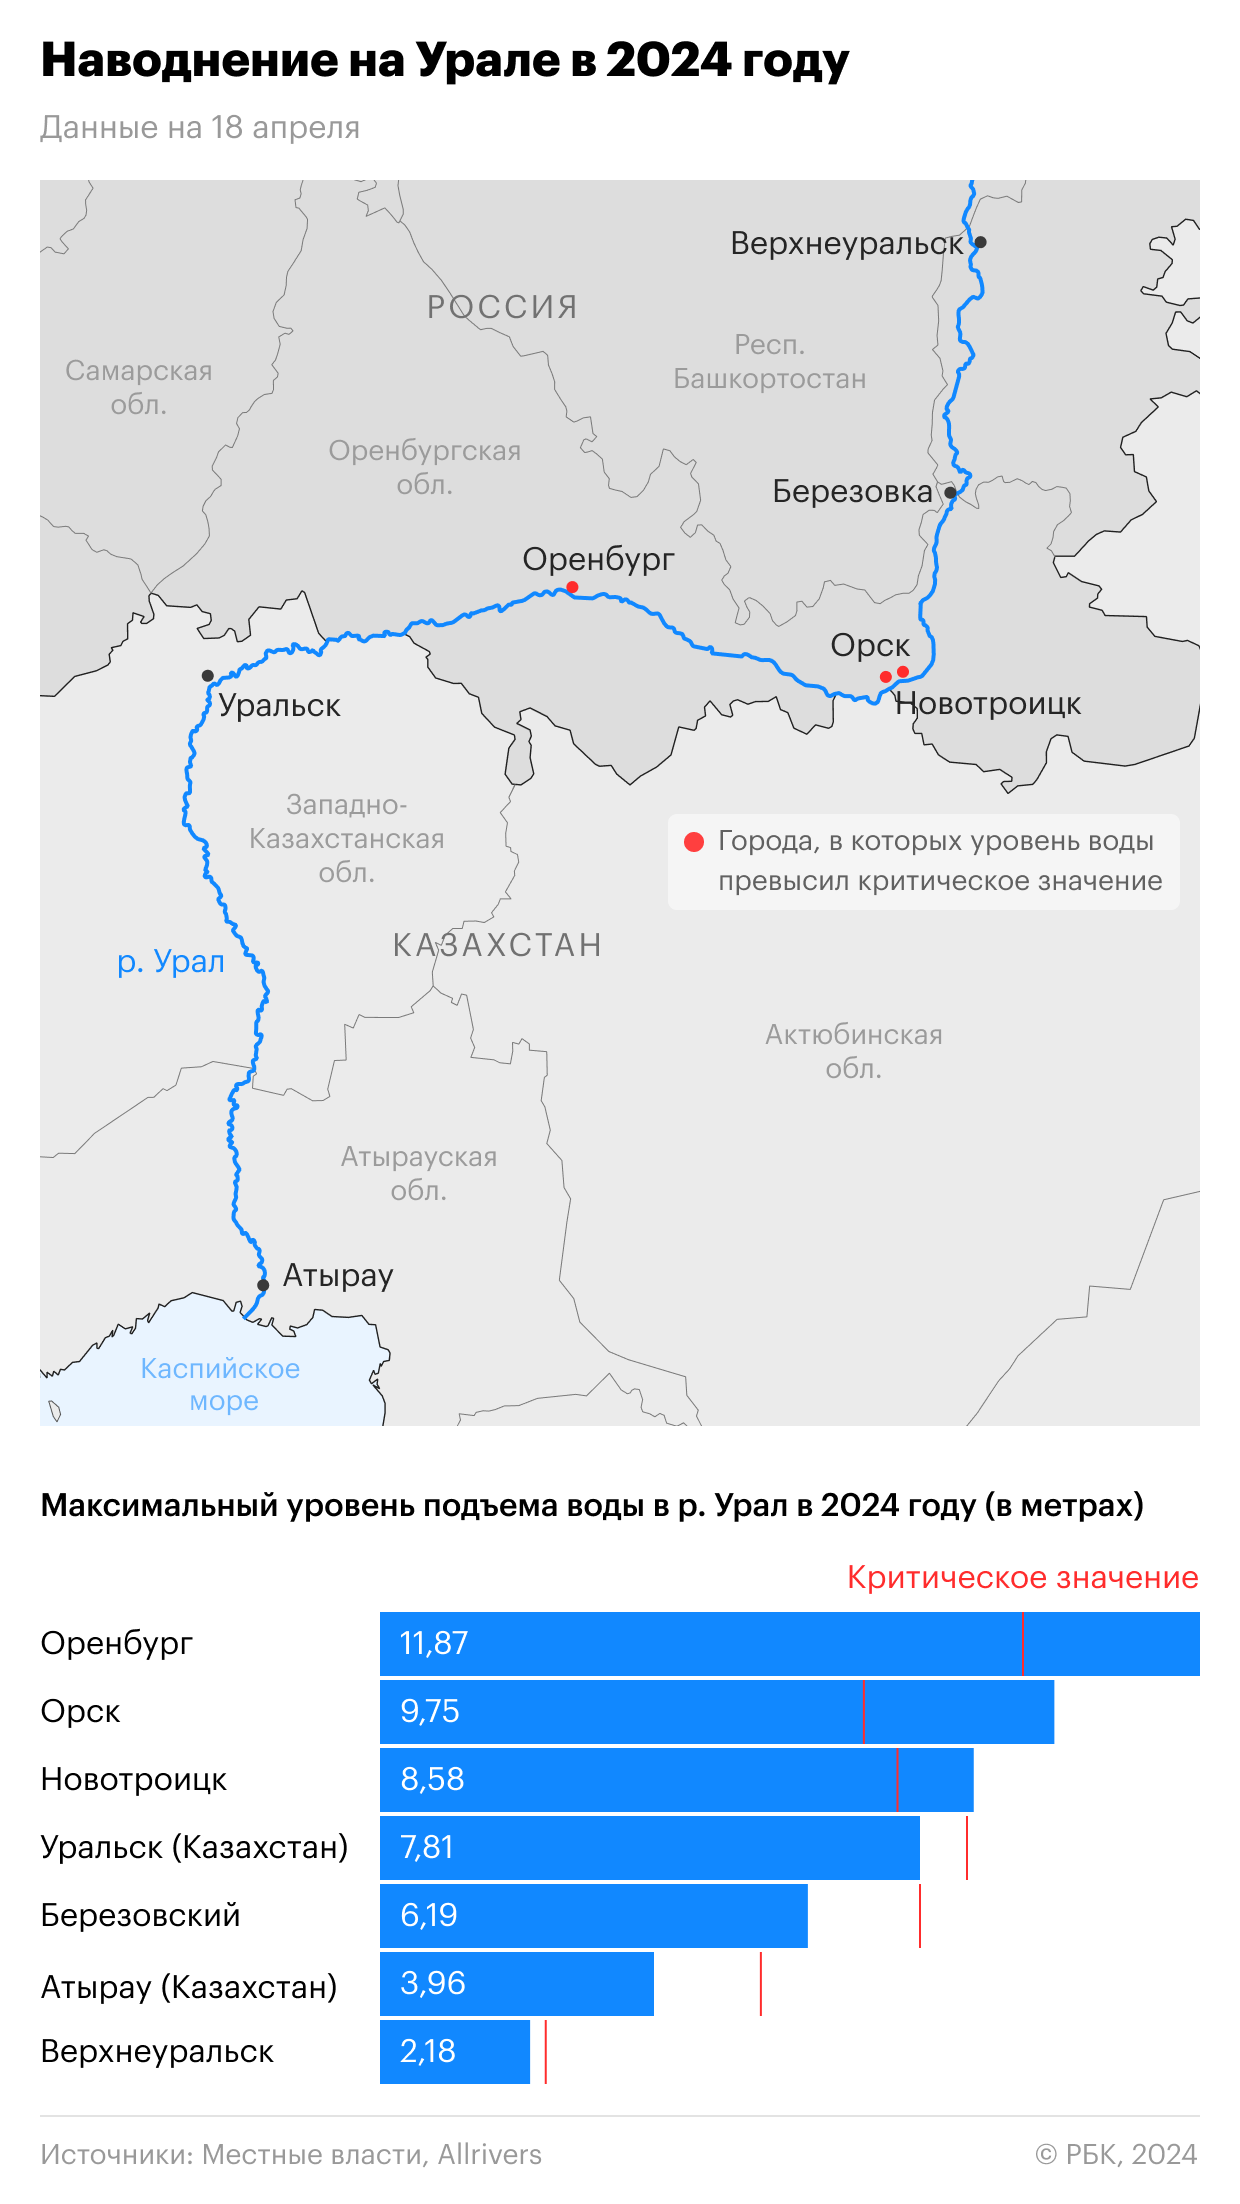 Выплаты пострадавшим от паводков в Оренбуржье достигли ₽1 млрд